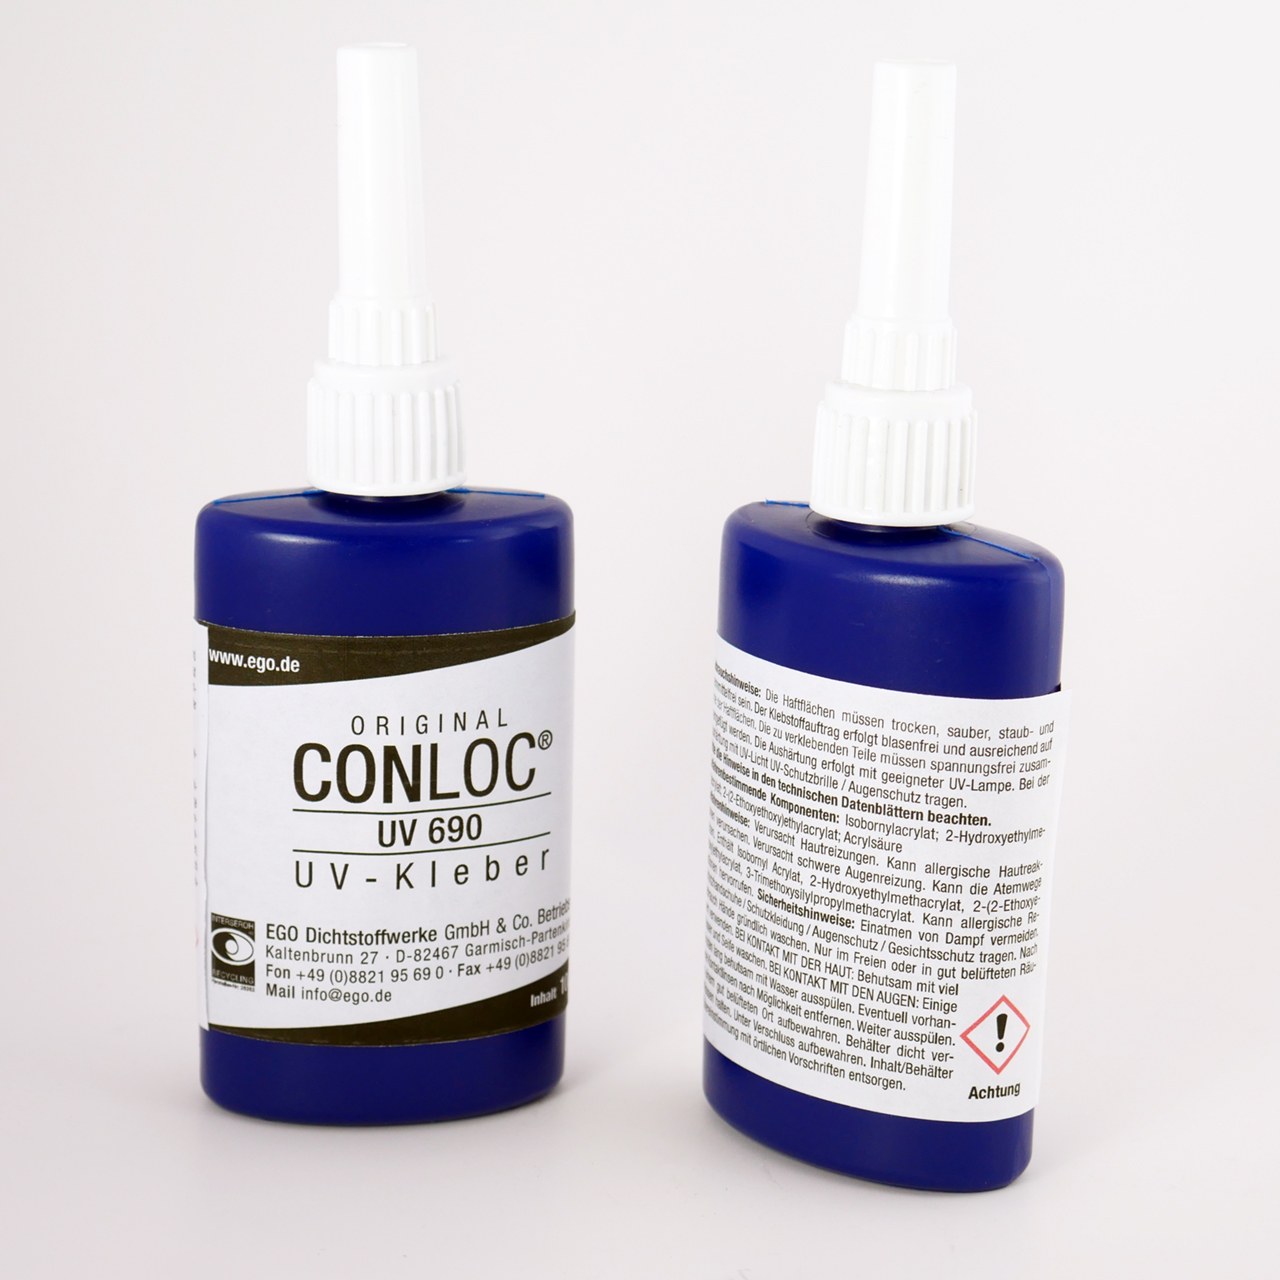 CONLOC® UV 690 UV Adhesive 100g